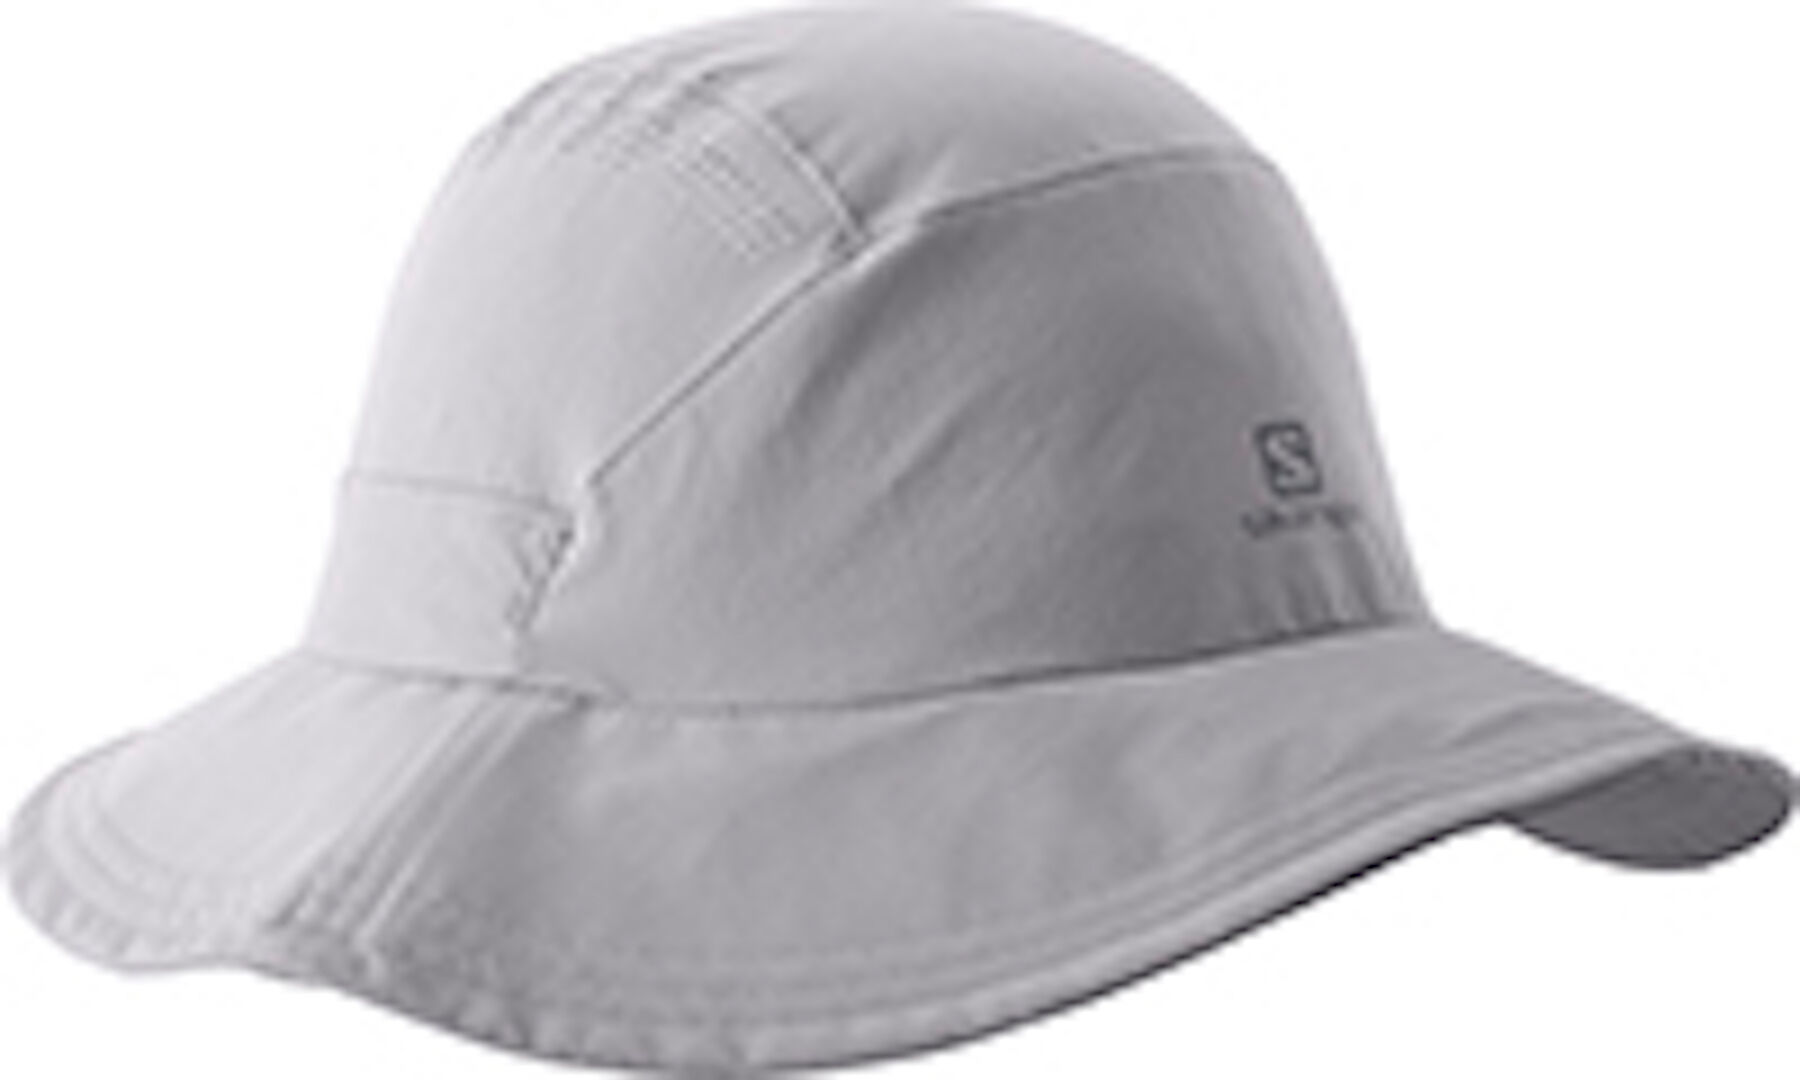 Salomon Mountain Hat - Hat